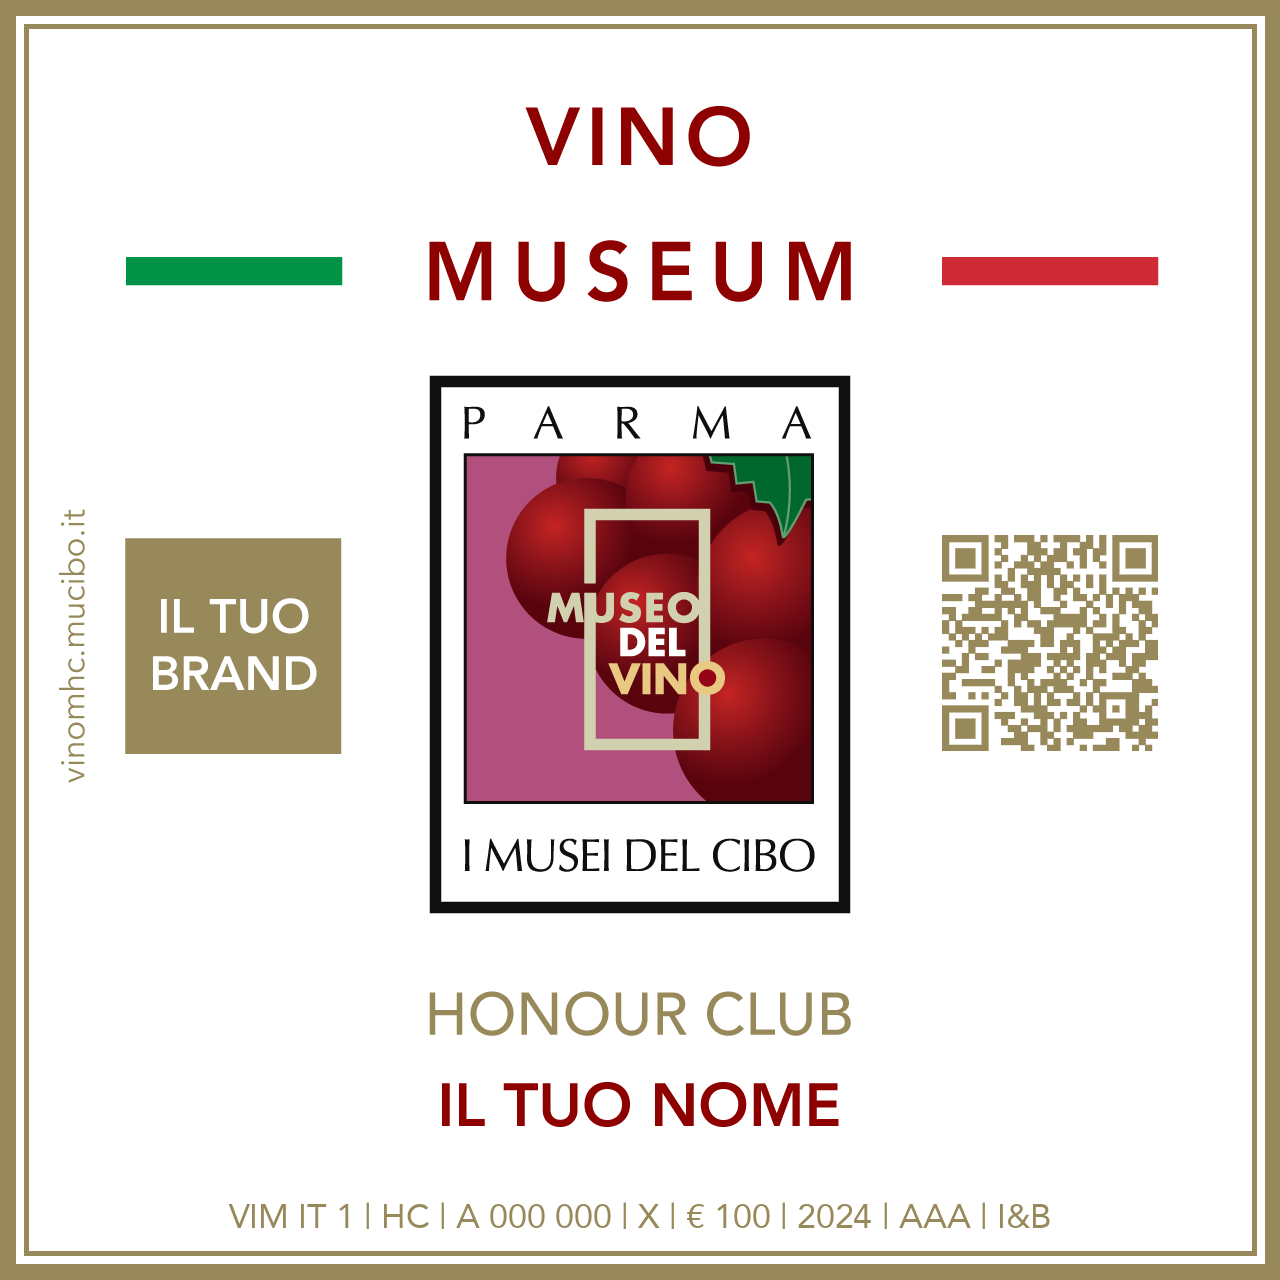 Vino Museum Honour Club - Token - IL TUO BRAND